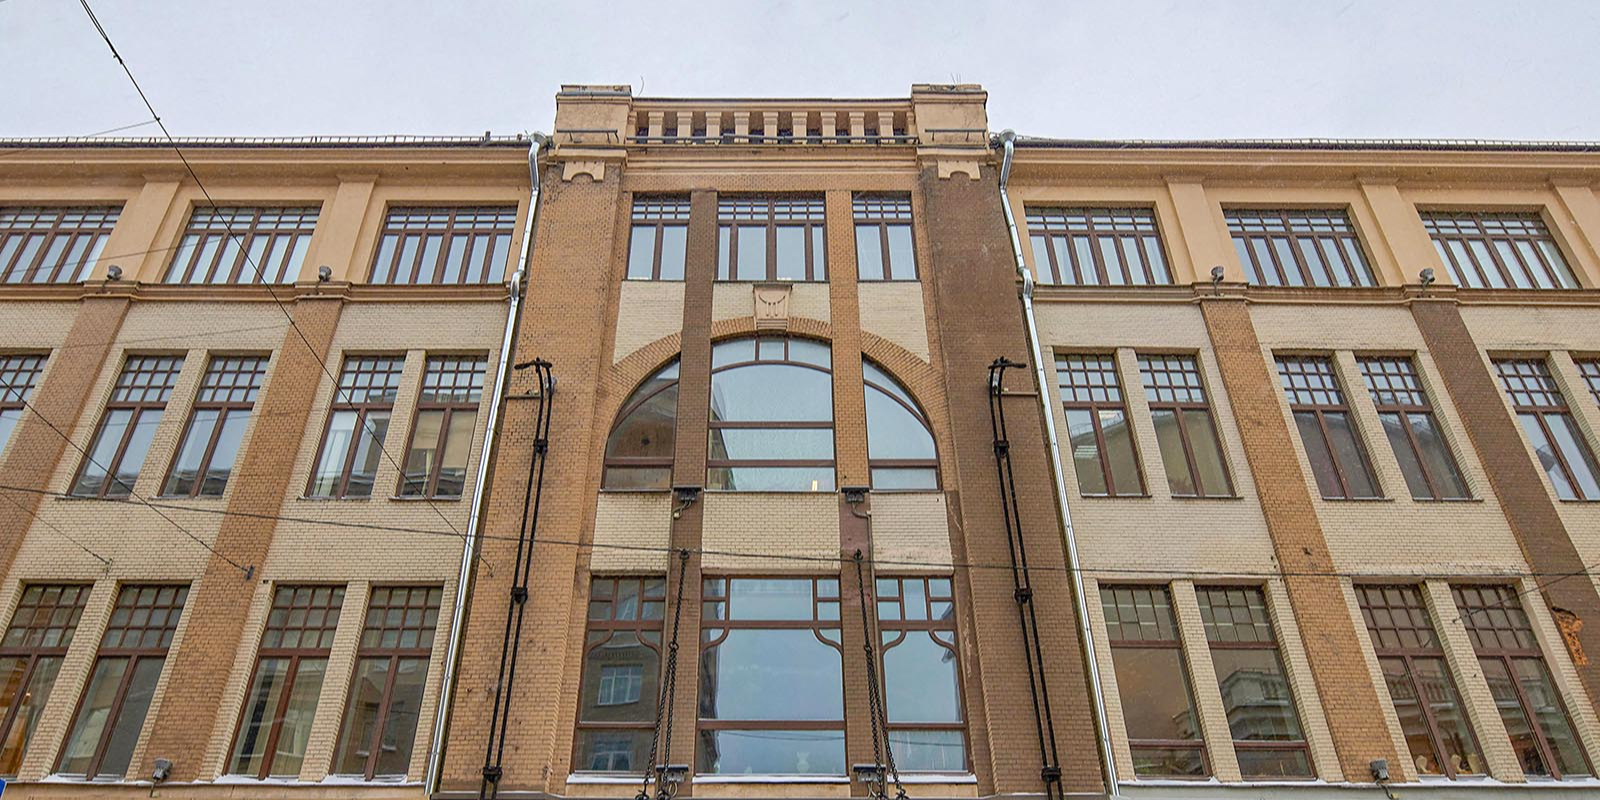 Торговый дом имени Левинсона построен в начале ХХ века и расположен по адресу: улица Большая Дмитровка, дом 32, строение 1. Фото: сайт мэра Москвы